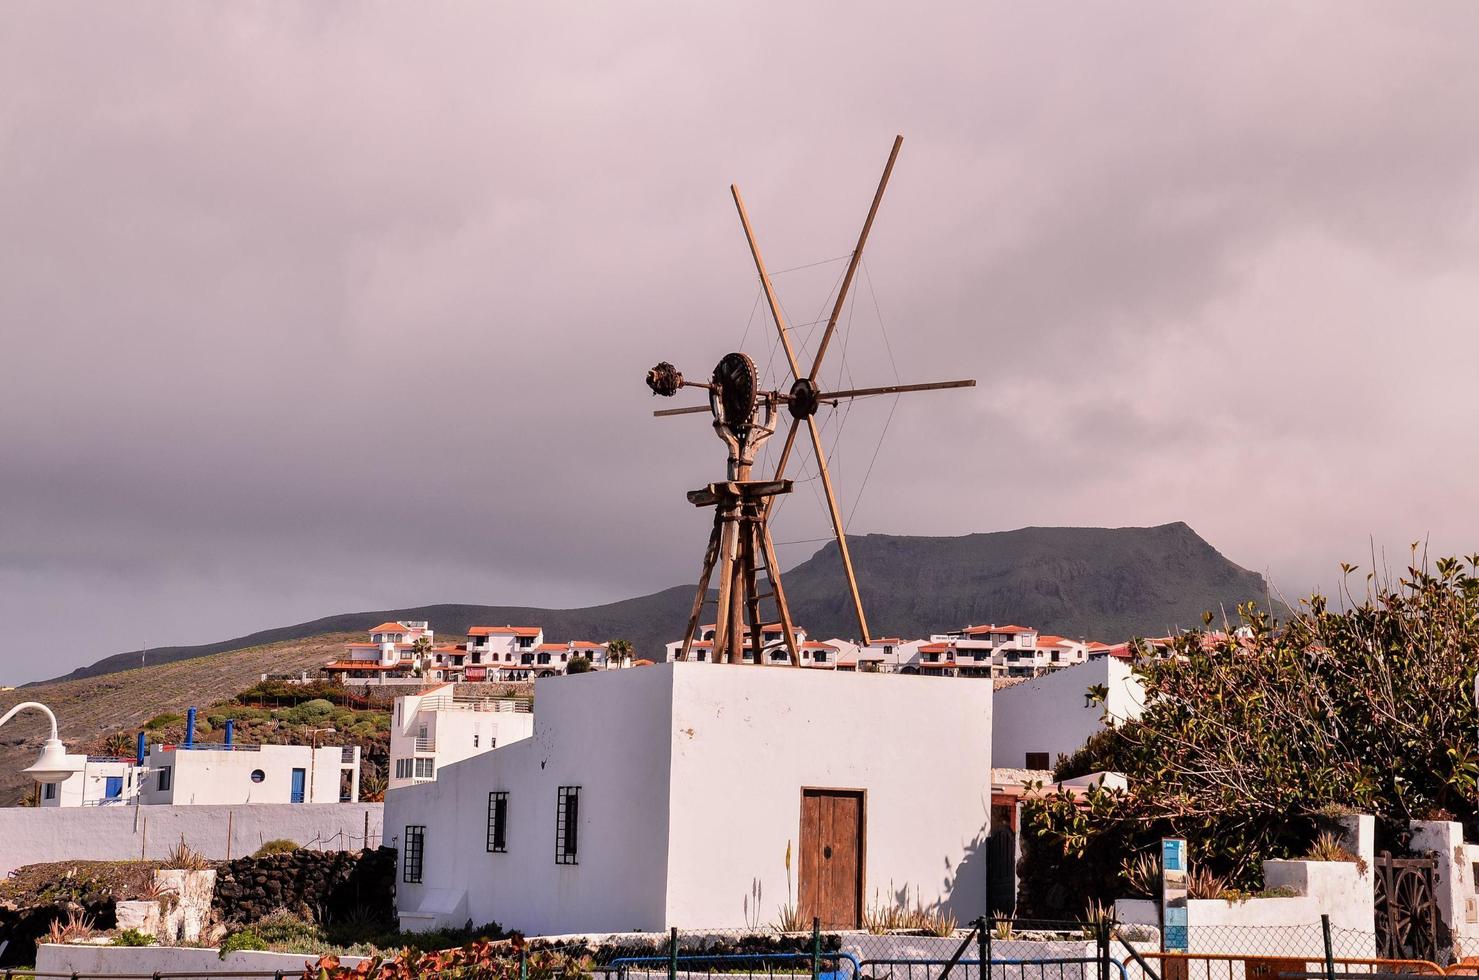 Moulin à vent sur bâtiment - Espagne 2022 photo